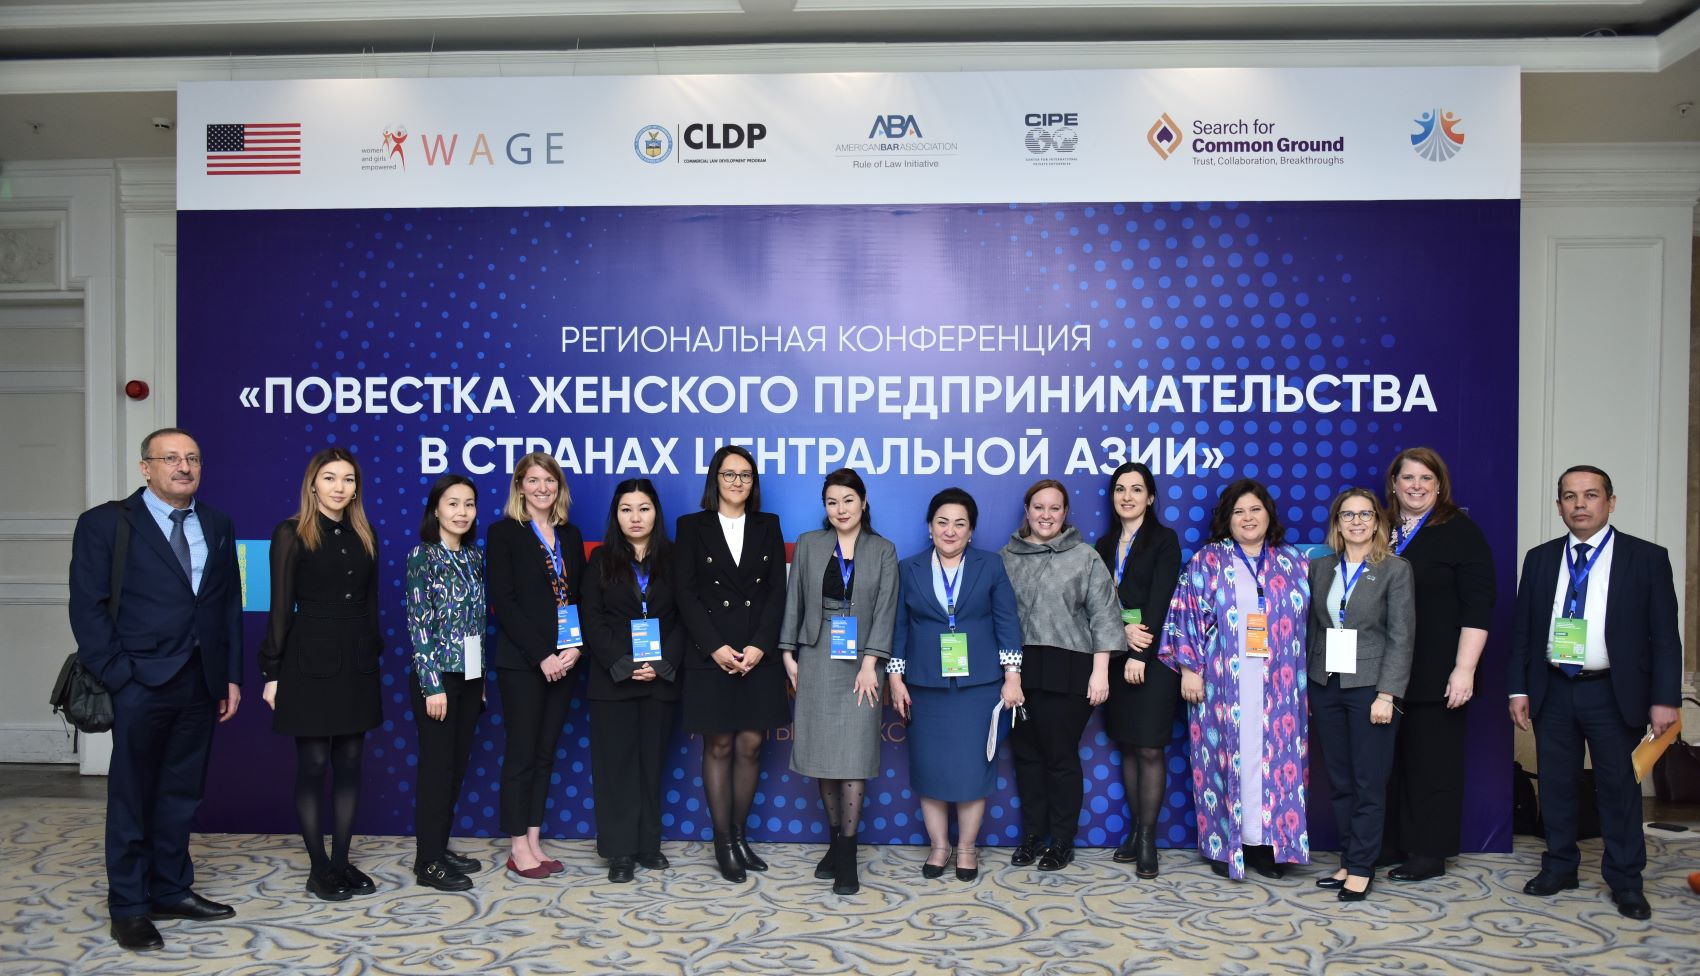 Итоговое фото с региональной конференции WAGE «Повестка женского предпринимательства в странах Центральной Азии»